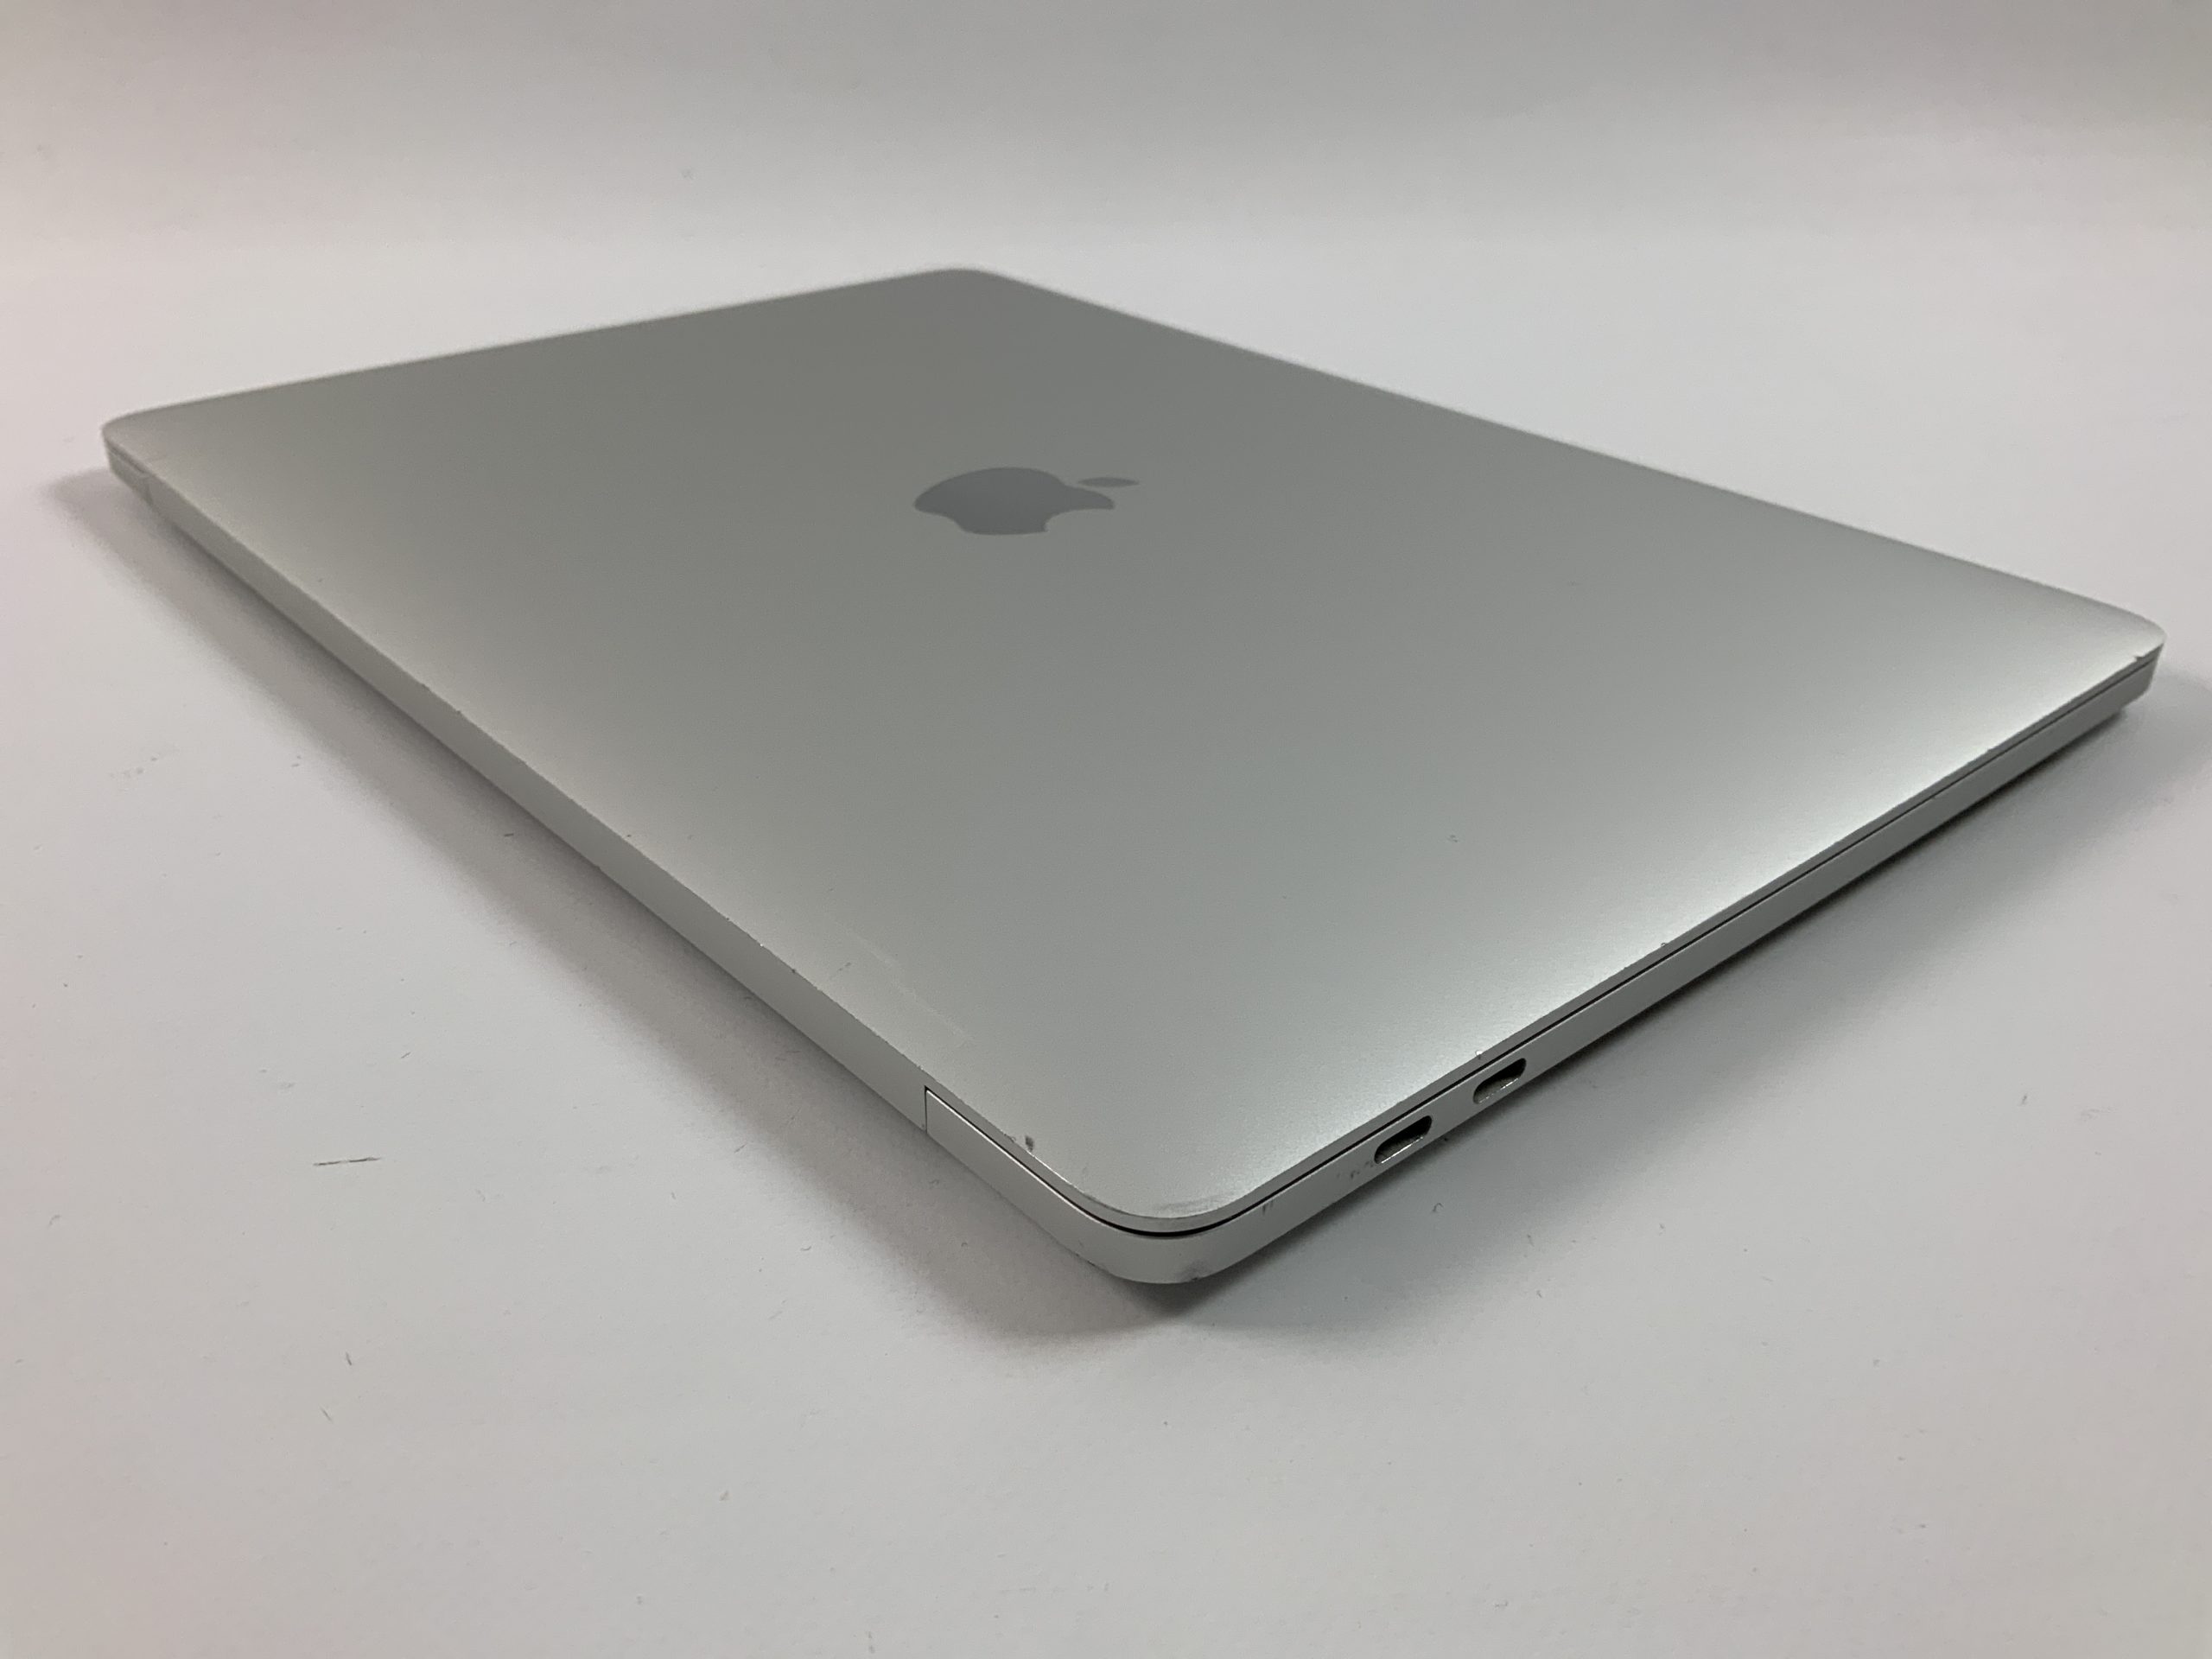 MacBook Pro 13" 4TBT Mid 2017 (Intel Core i7 3.5 GHz 16 GB RAM 512 GB SSD), Silver, Intel Core i7 3.5 GHz, 16 GB RAM, 512 GB SSD, immagine 4